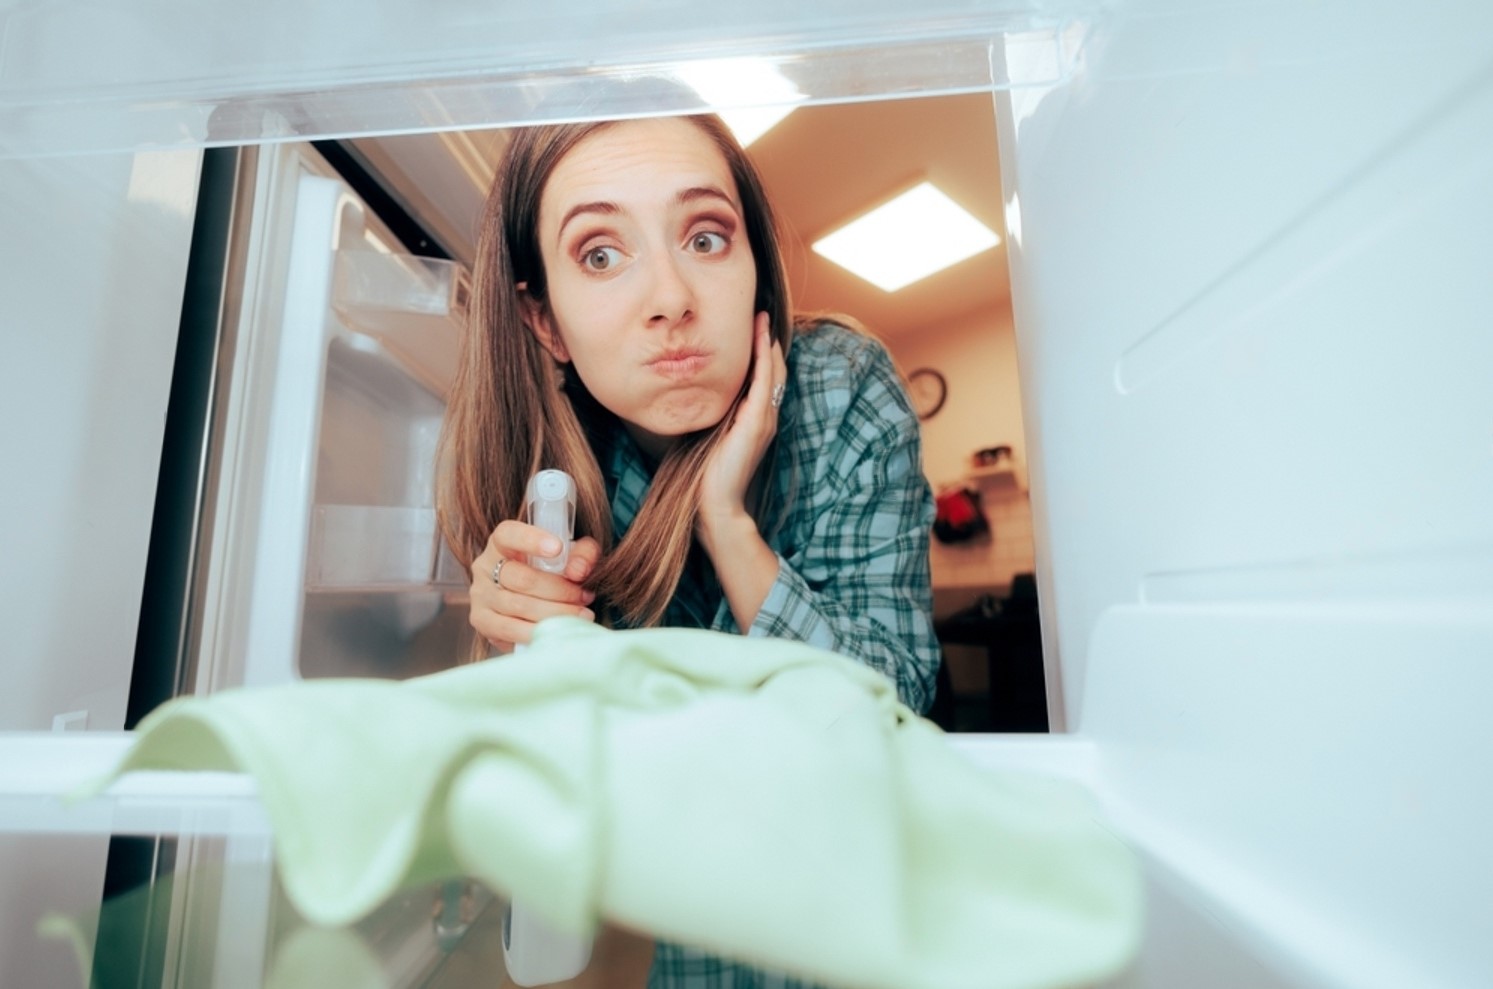 Неприятный запах от холодильника